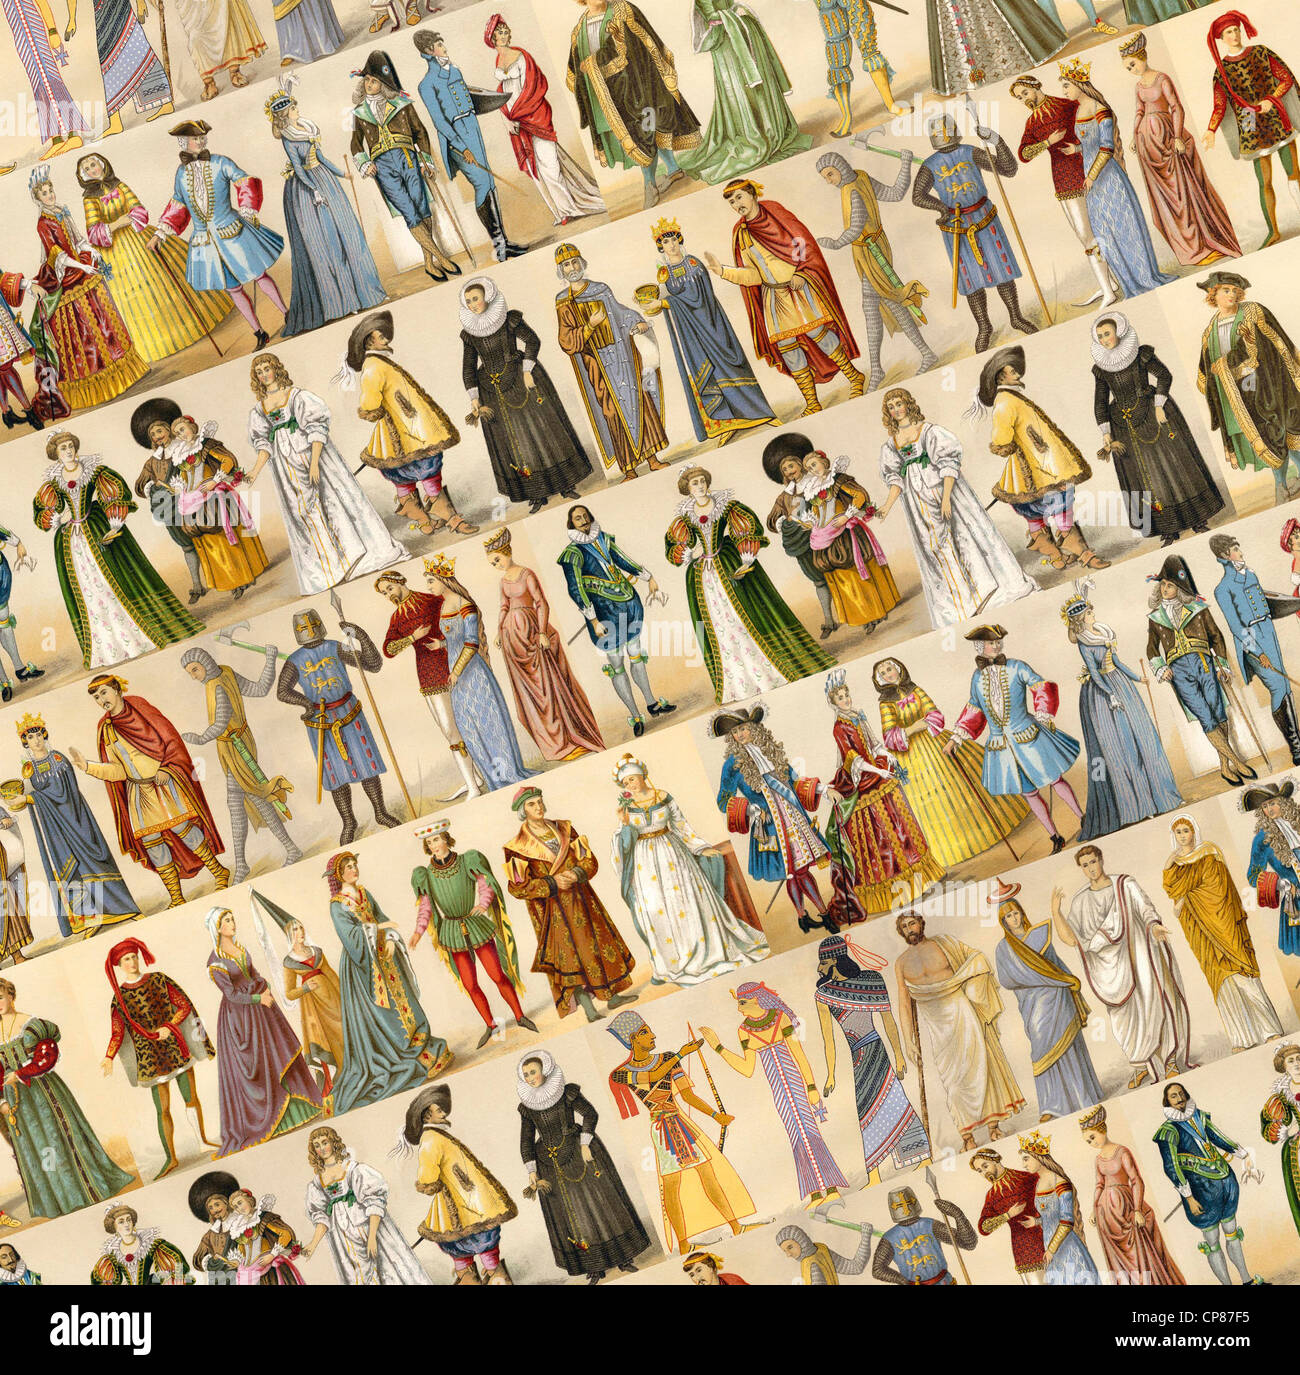 Kostüme, Mode, Kleidung, collage von der Antike bis zum 19. Jahrhundert,  Historische, Zeichnerische Darstellung, Kostüme, Mode Stockfotografie -  Alamy